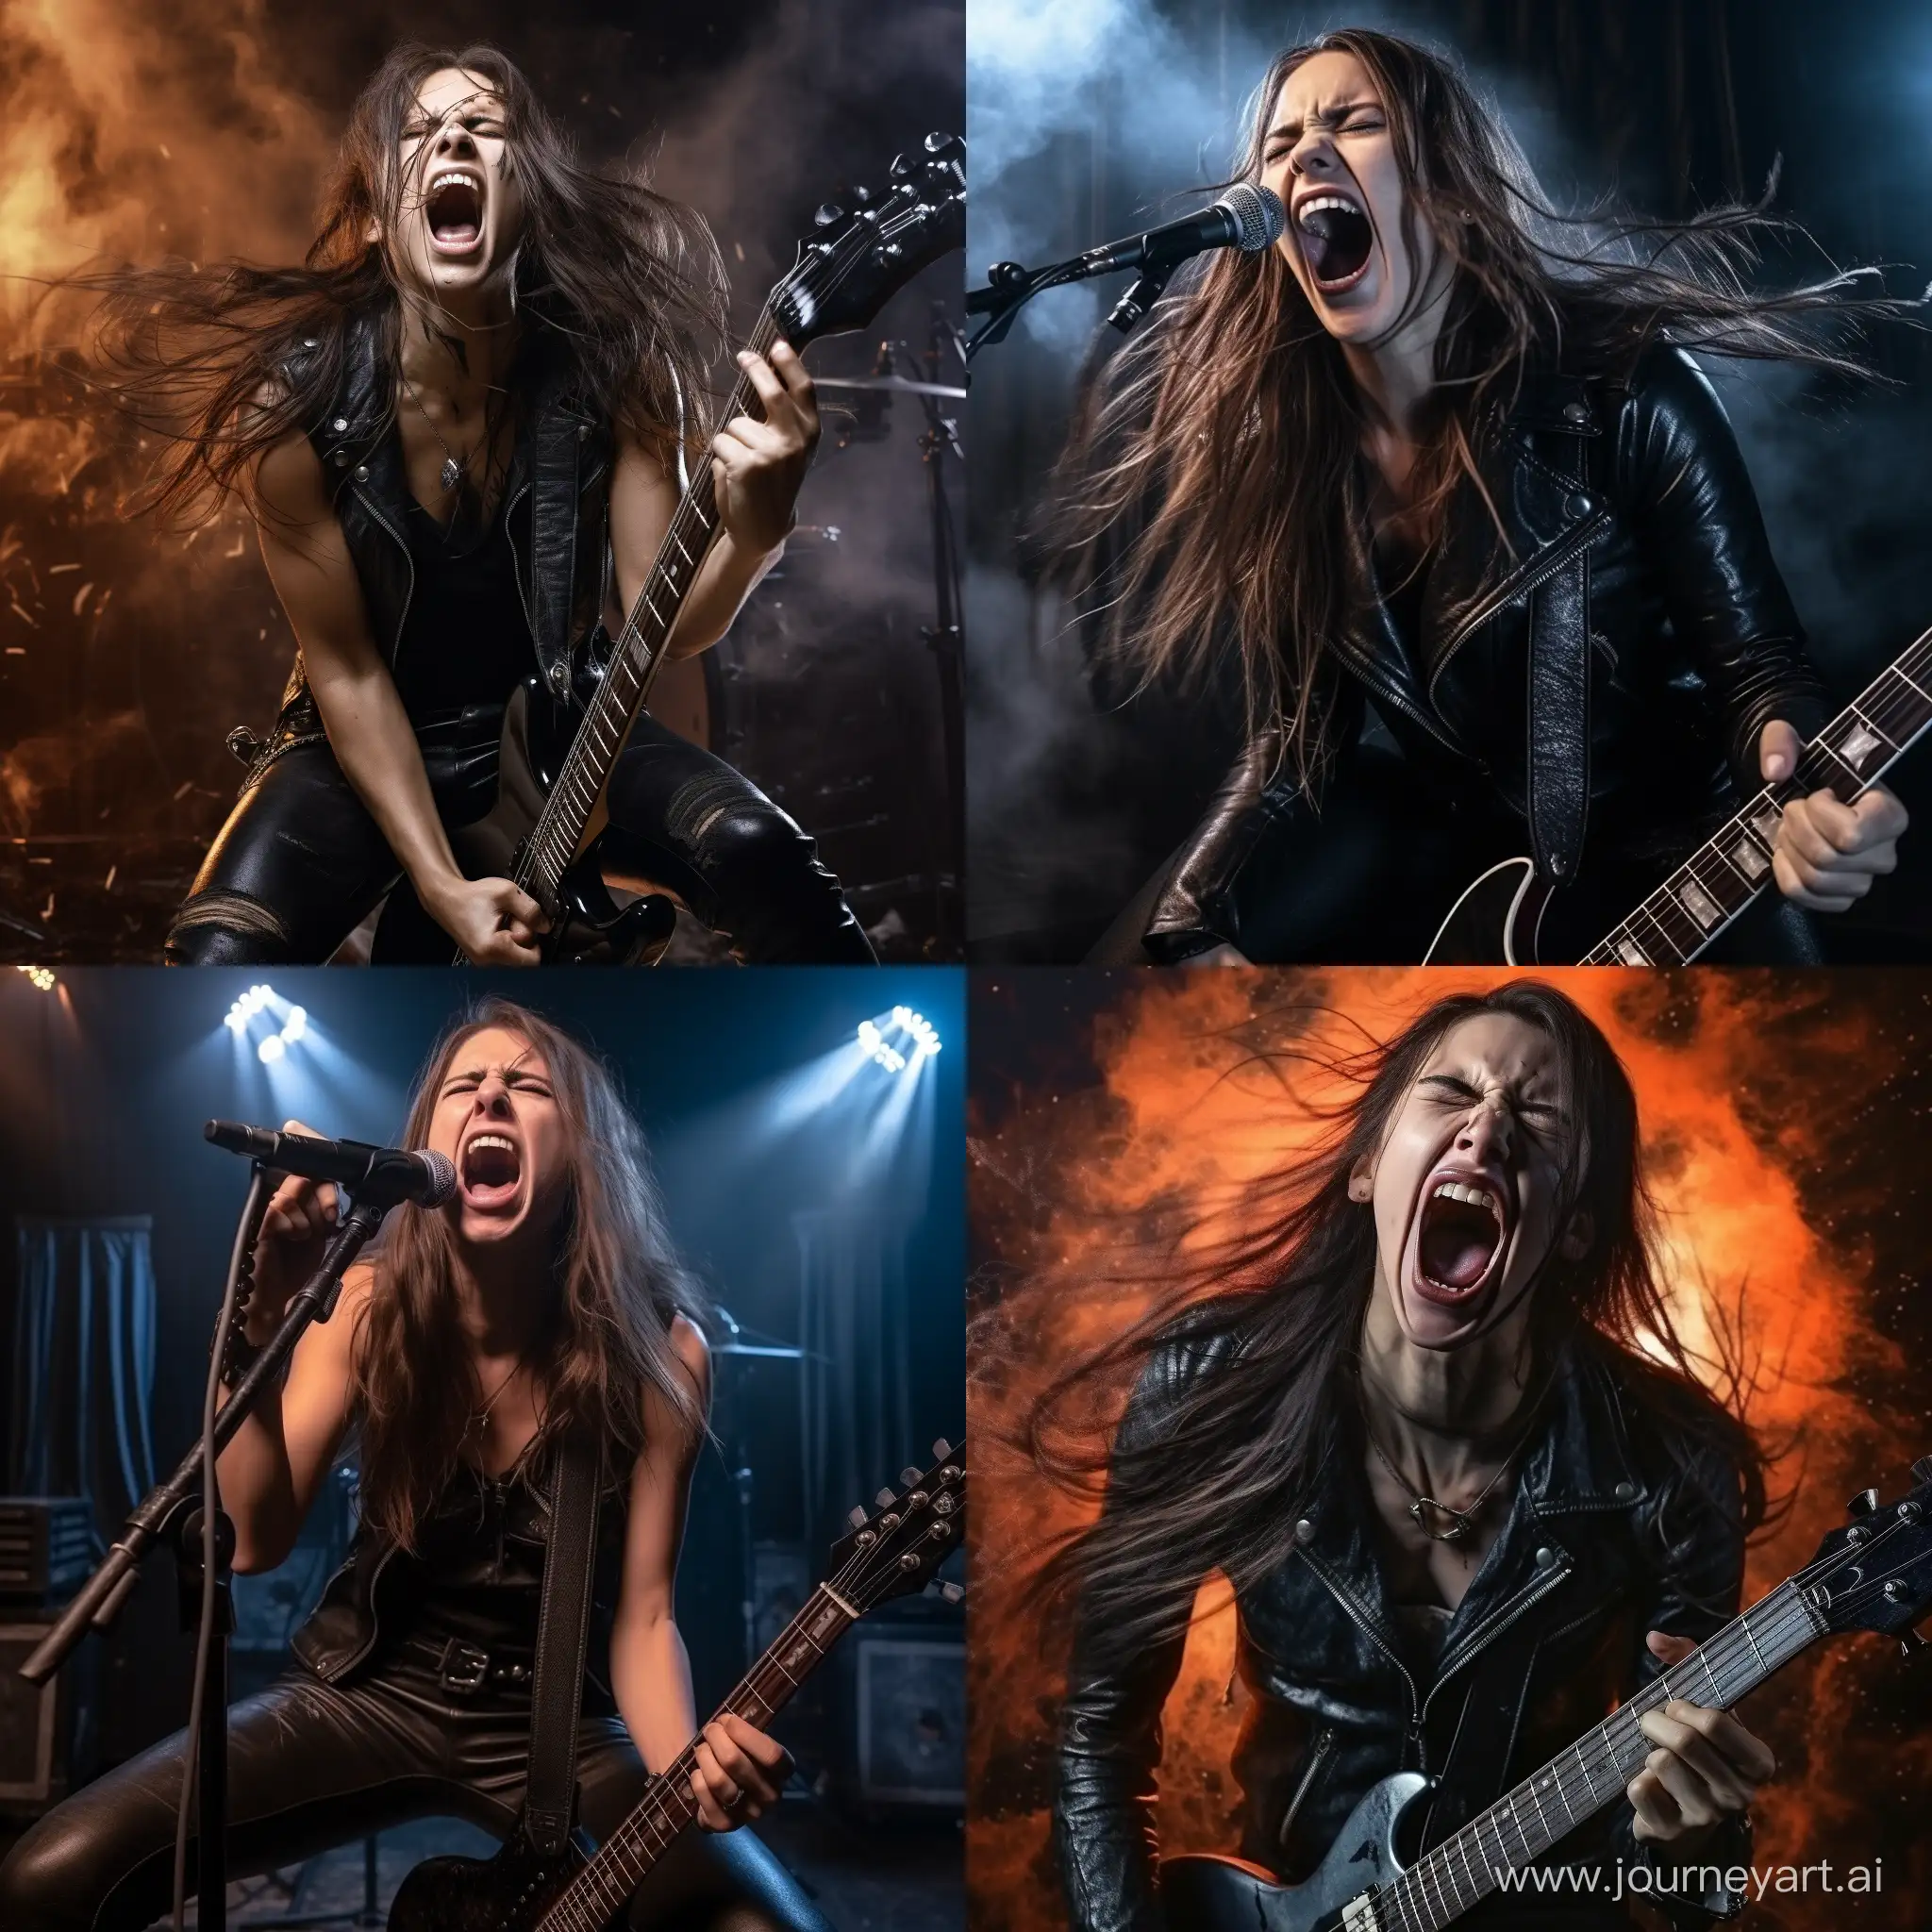 Девушка с длинными волосами, одетая в чёрную кожаную одежду,на сцене играет на электрогитаре в метал-рок-группе и кричит в микрофон песню, фотография, гиперреализм, высокое разрешение